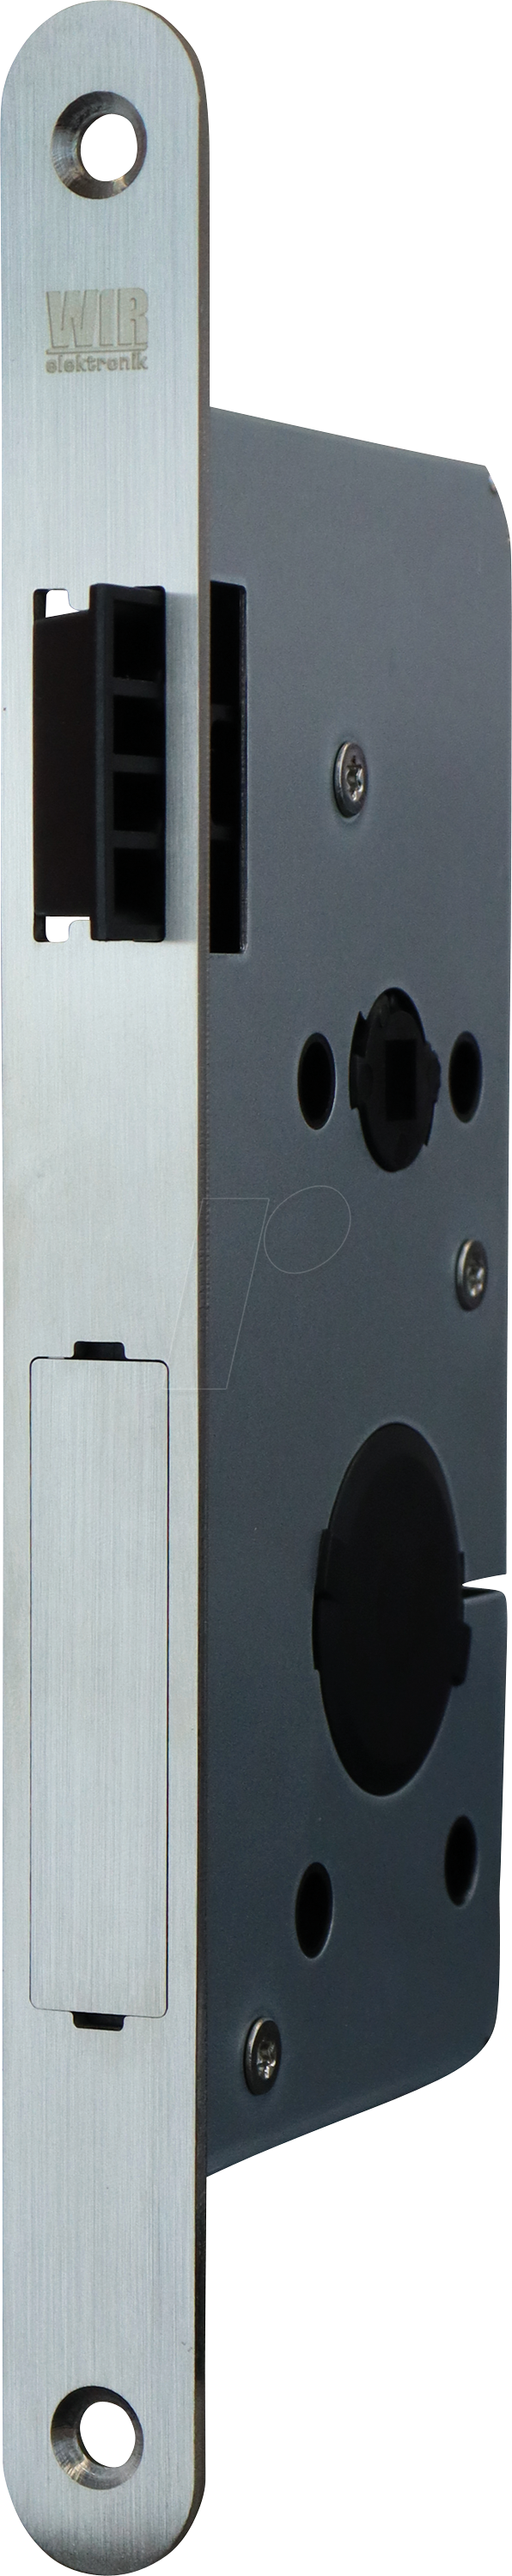 WIR 1002-000017 - Elektronisches Türschloss, Schrägfalle rechts von WIR ELEKTRONIK